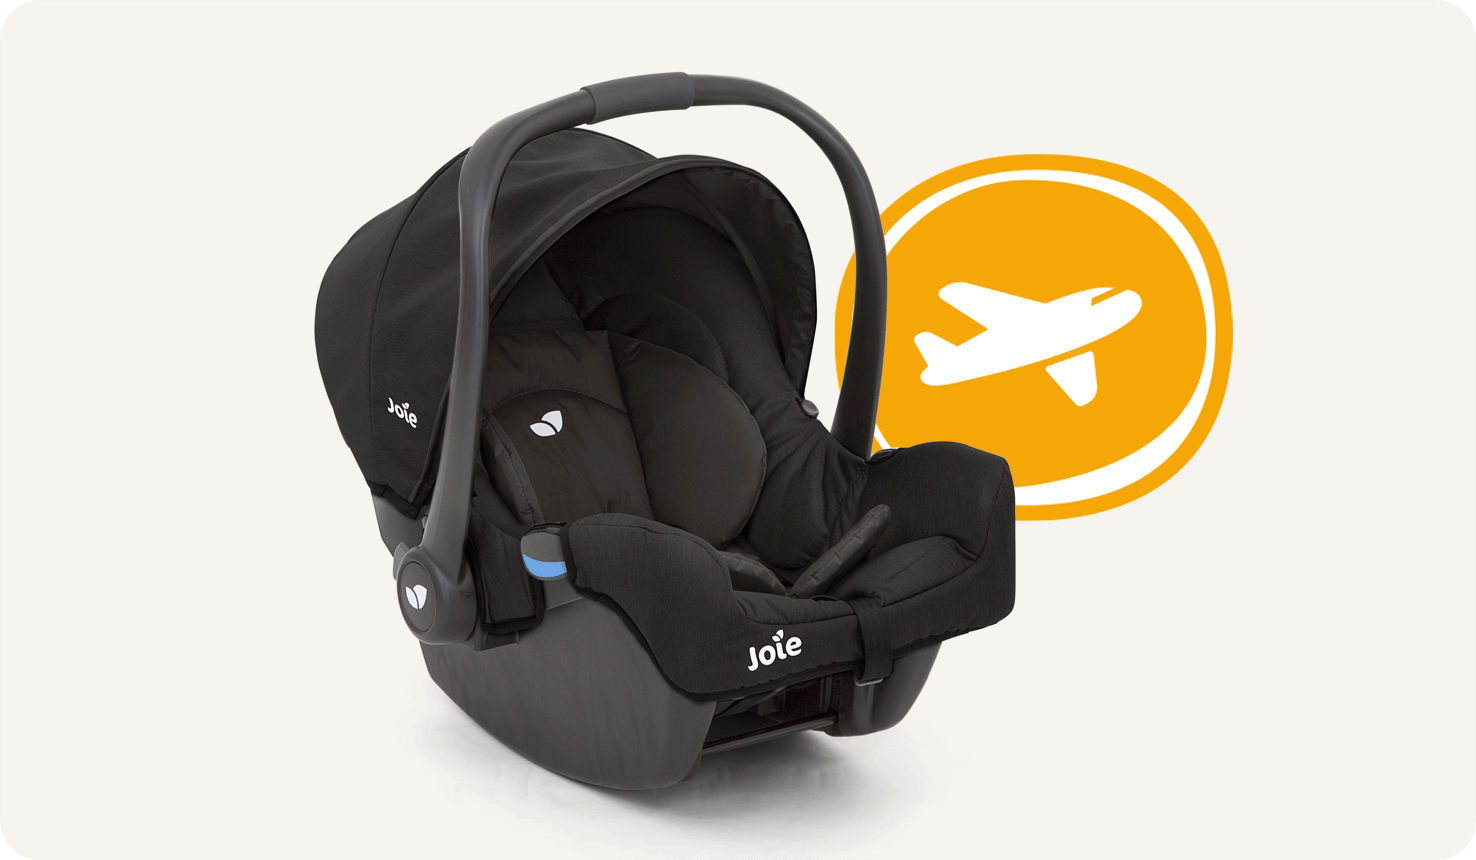 Vue à angle droit du siège auto pour bébé Joie gemm, coloris noir, avec icône représentant un avion à côté.